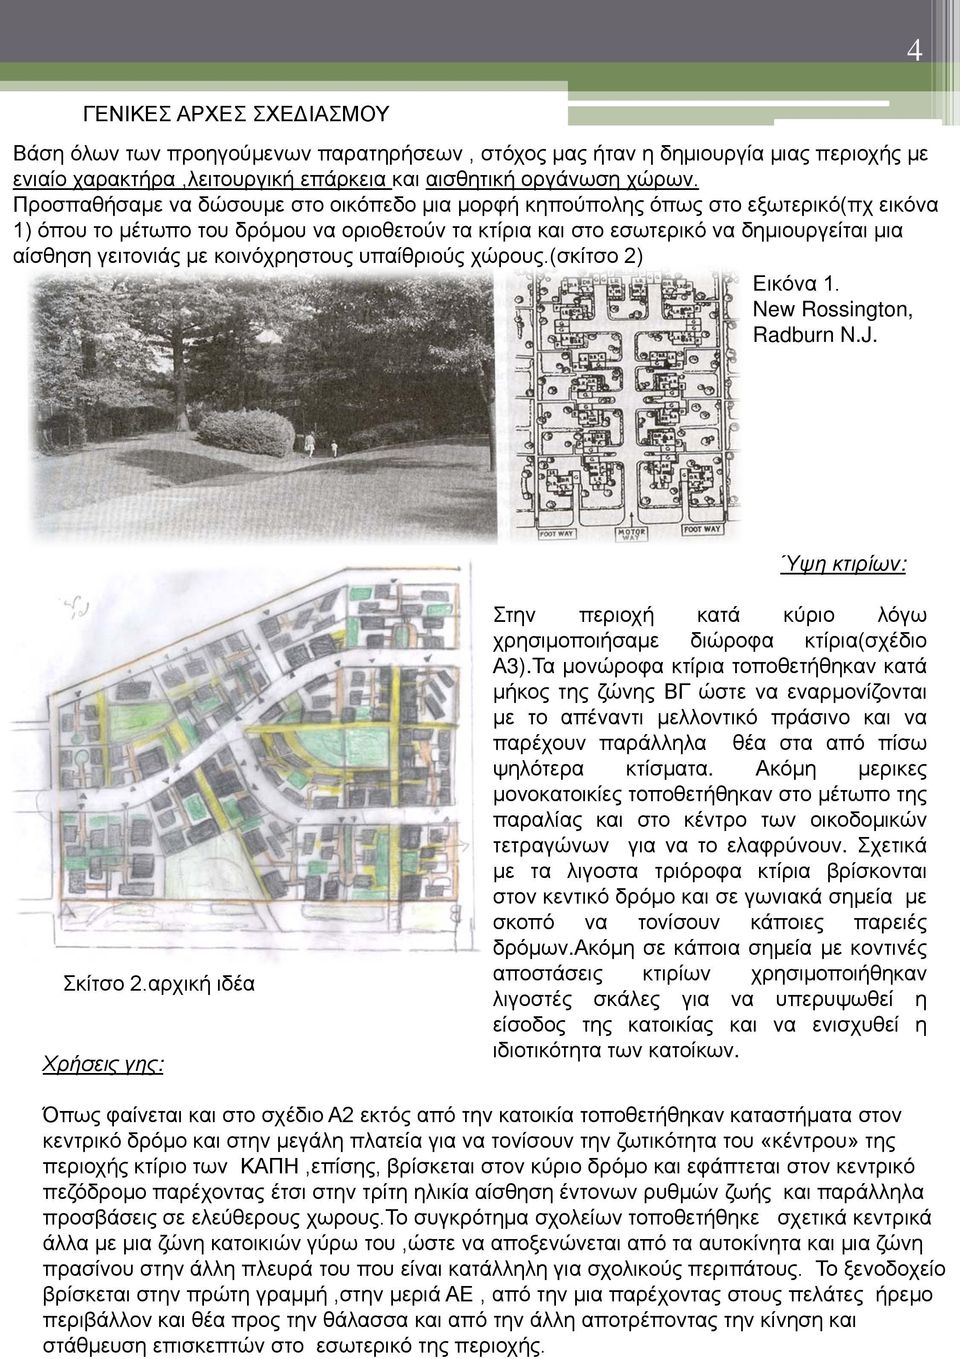 κοινόχρηστους υπαίθριούς χώρους.(σκίτσο 2) Εικόνα 1. New Rossington, Radburn N.J. Ύψη κτιρίων: Σκίτσο 2.αρχική ιδέα Χρήσεις γης: Στην περιοχή κατά κύριο λόγω χρησιμοποιήσαμε διώροφα κτίρια(σχέδιο Α3).